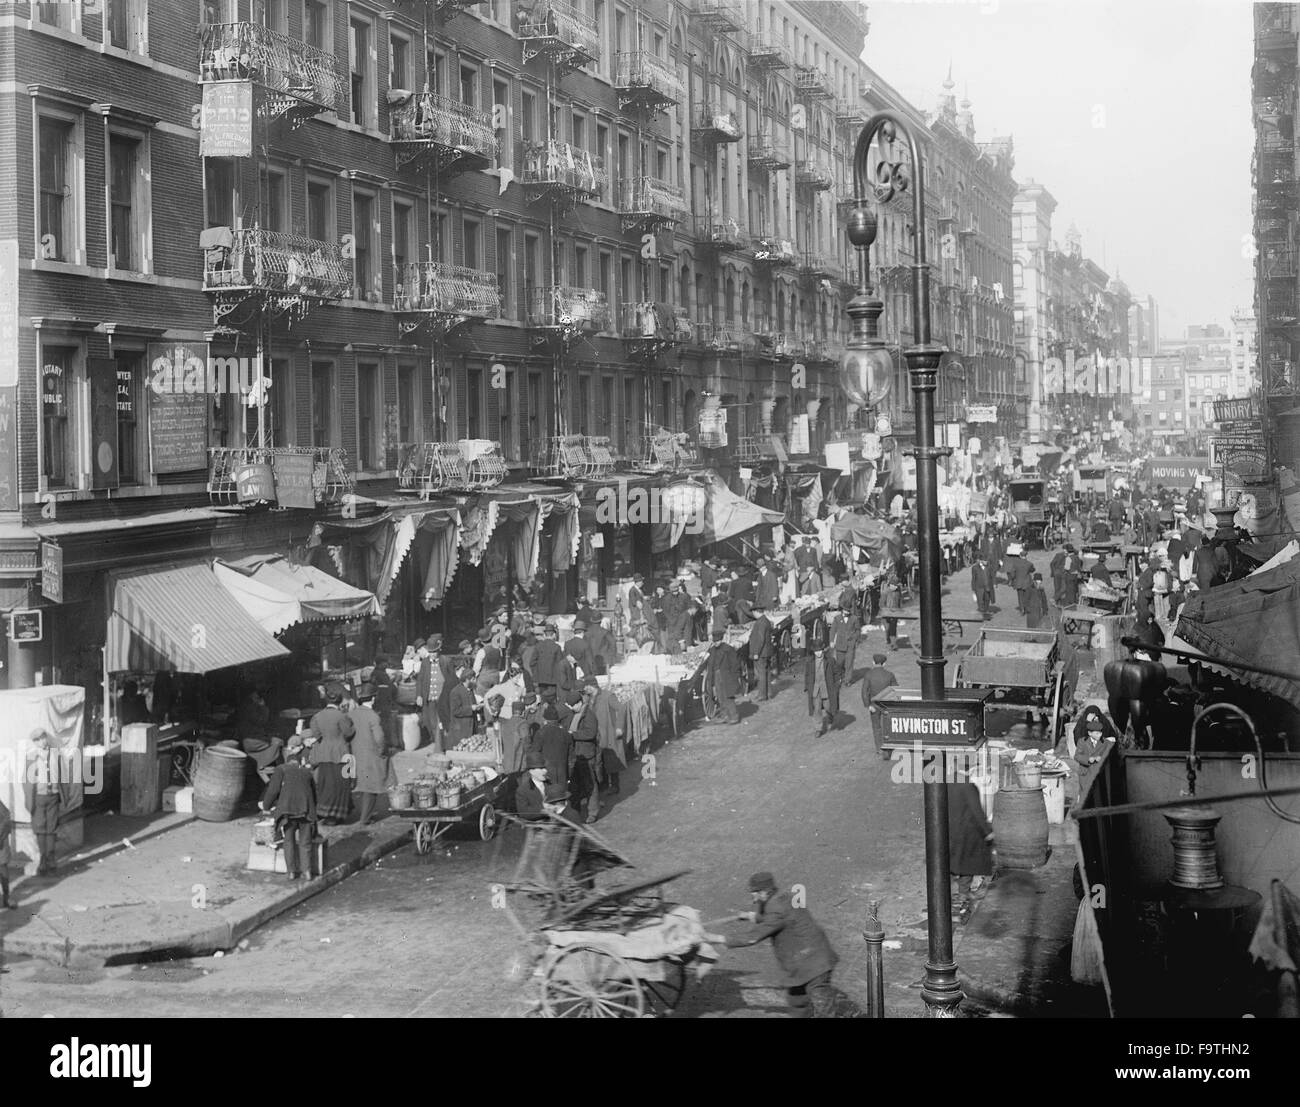 La strada affollata scena, il Ghetto Ebraico, il Lower East Side a Rivington Street, New York City, Stati Uniti d'America, circa 1905 Foto Stock